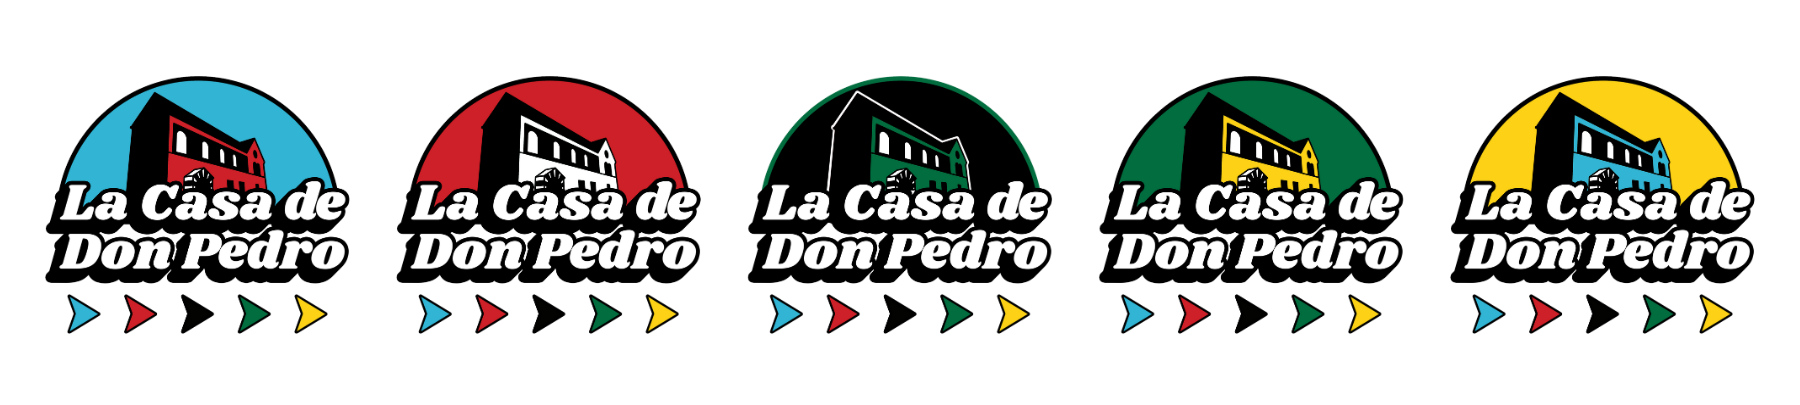 La Casa de Don Pedro